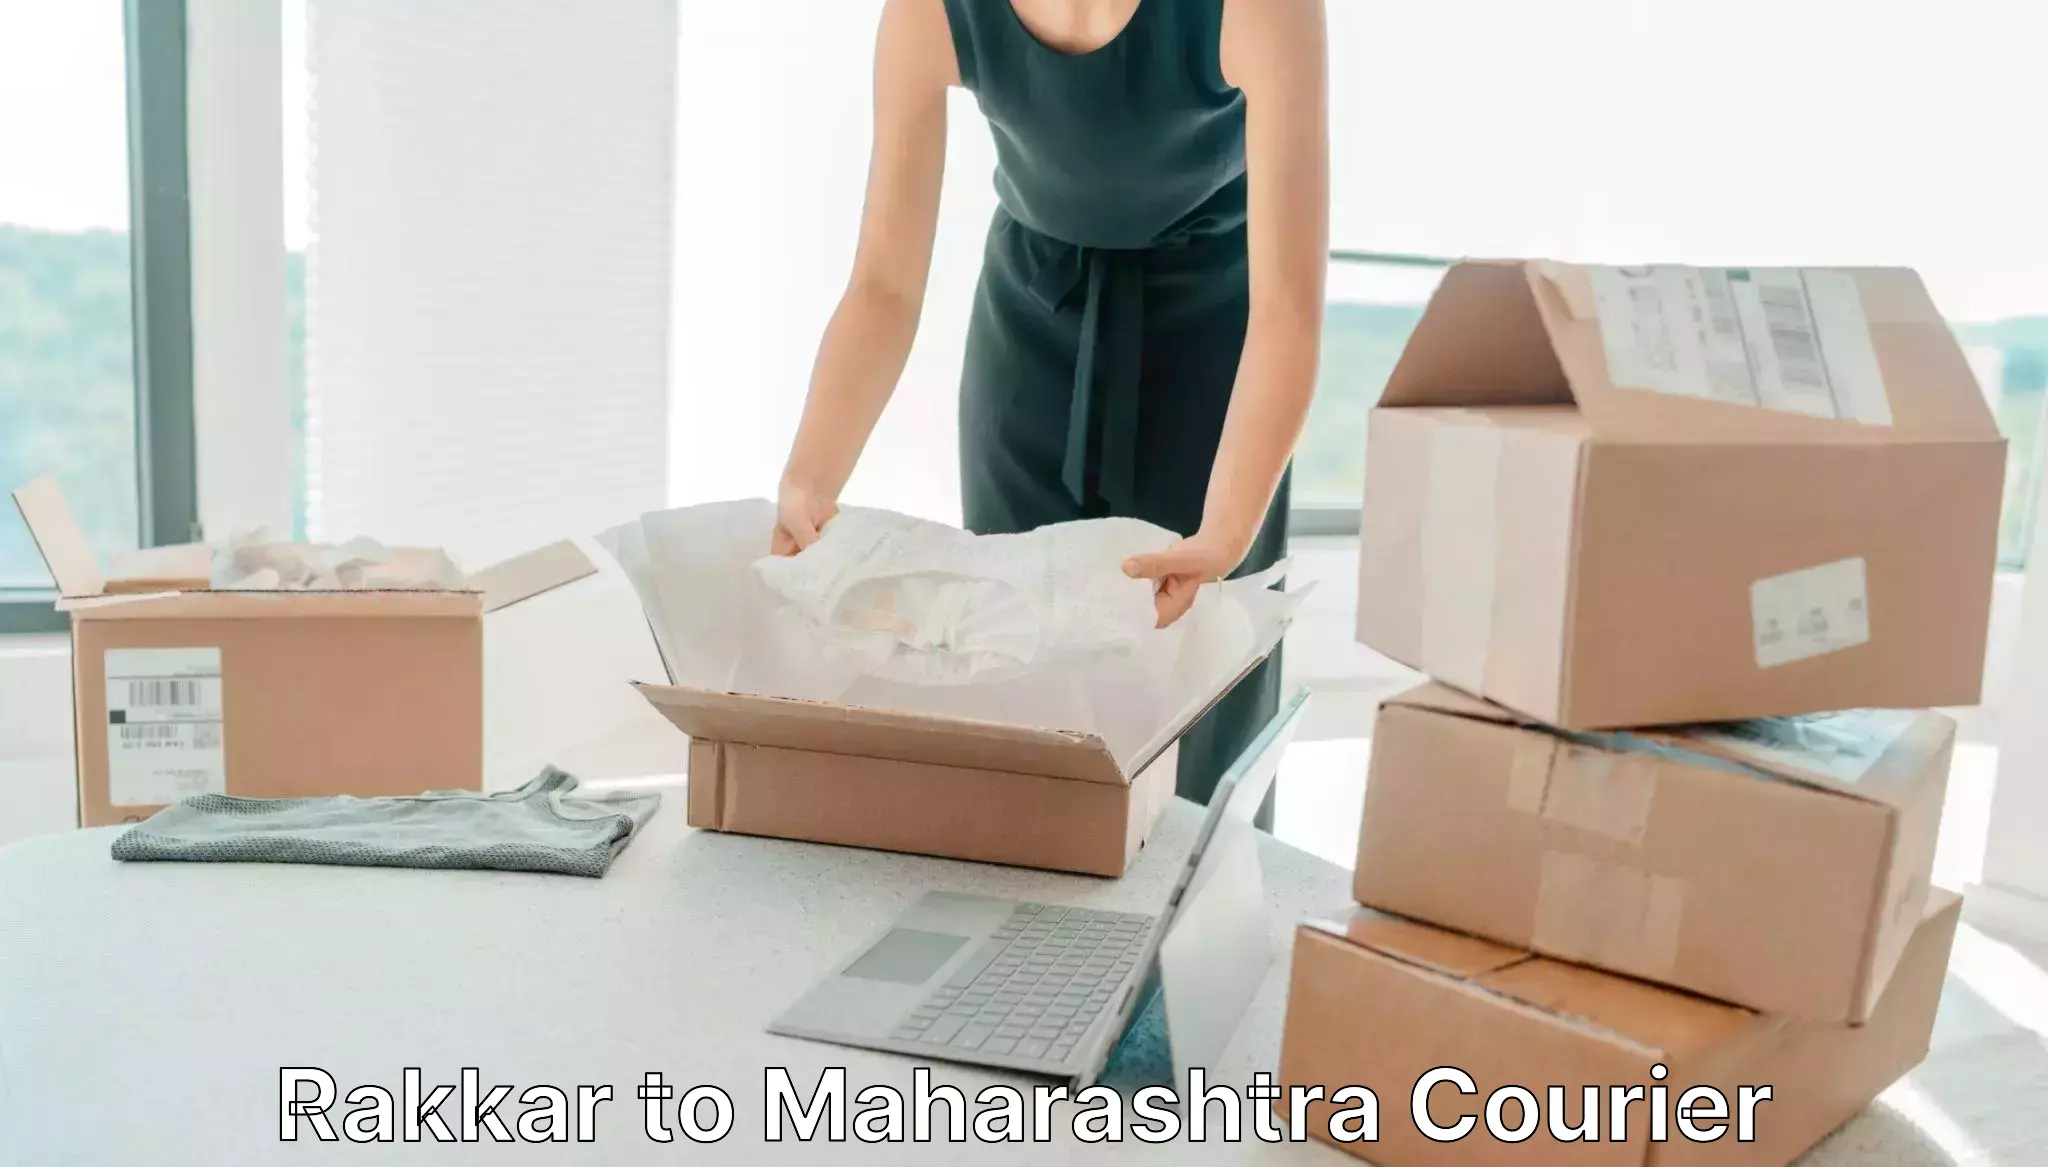 Courier service innovation Rakkar to Mumbai University